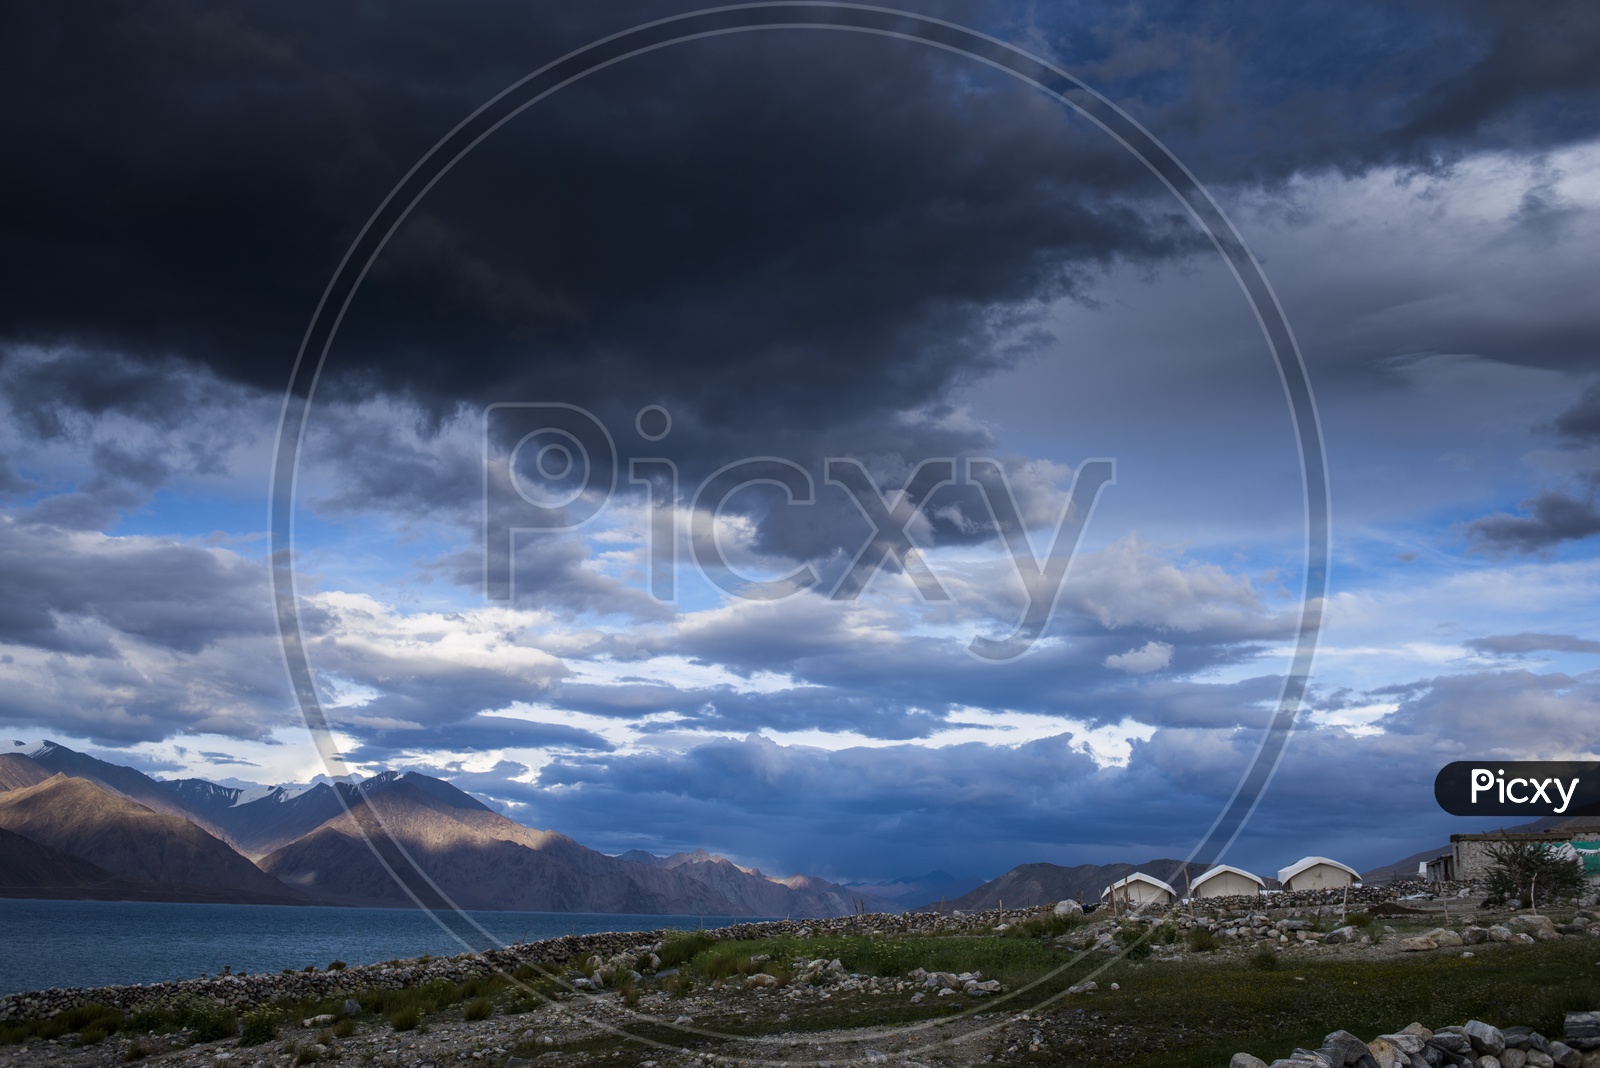 Clouds at Pangong Lake, Ladakh